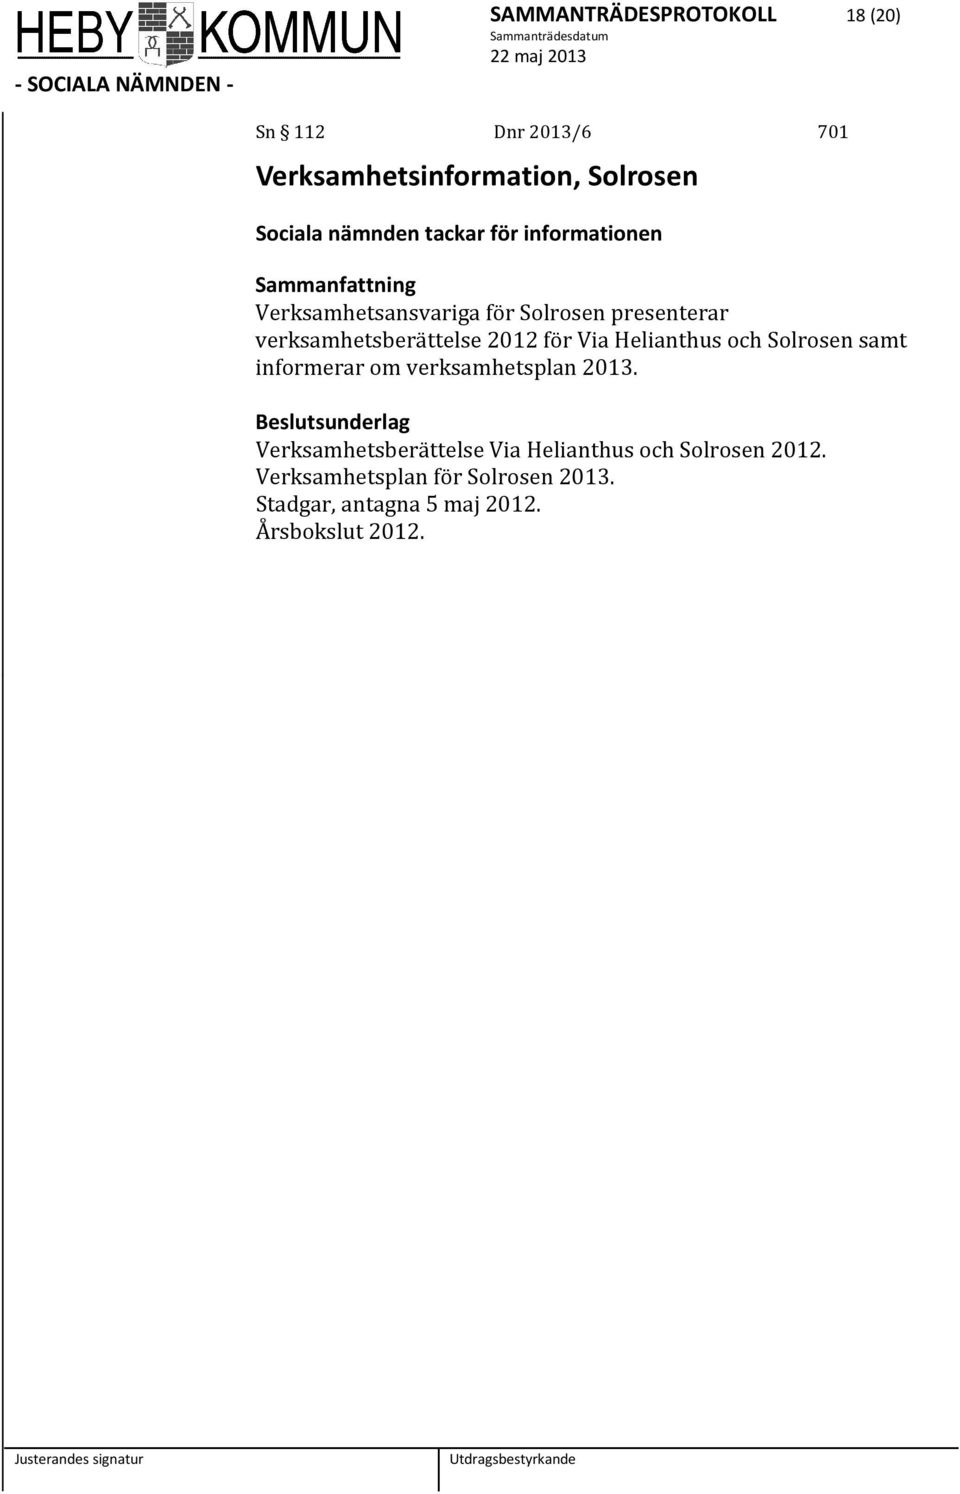 Helianthus och Solrosen samt informerar om verksamhetsplan 2013.